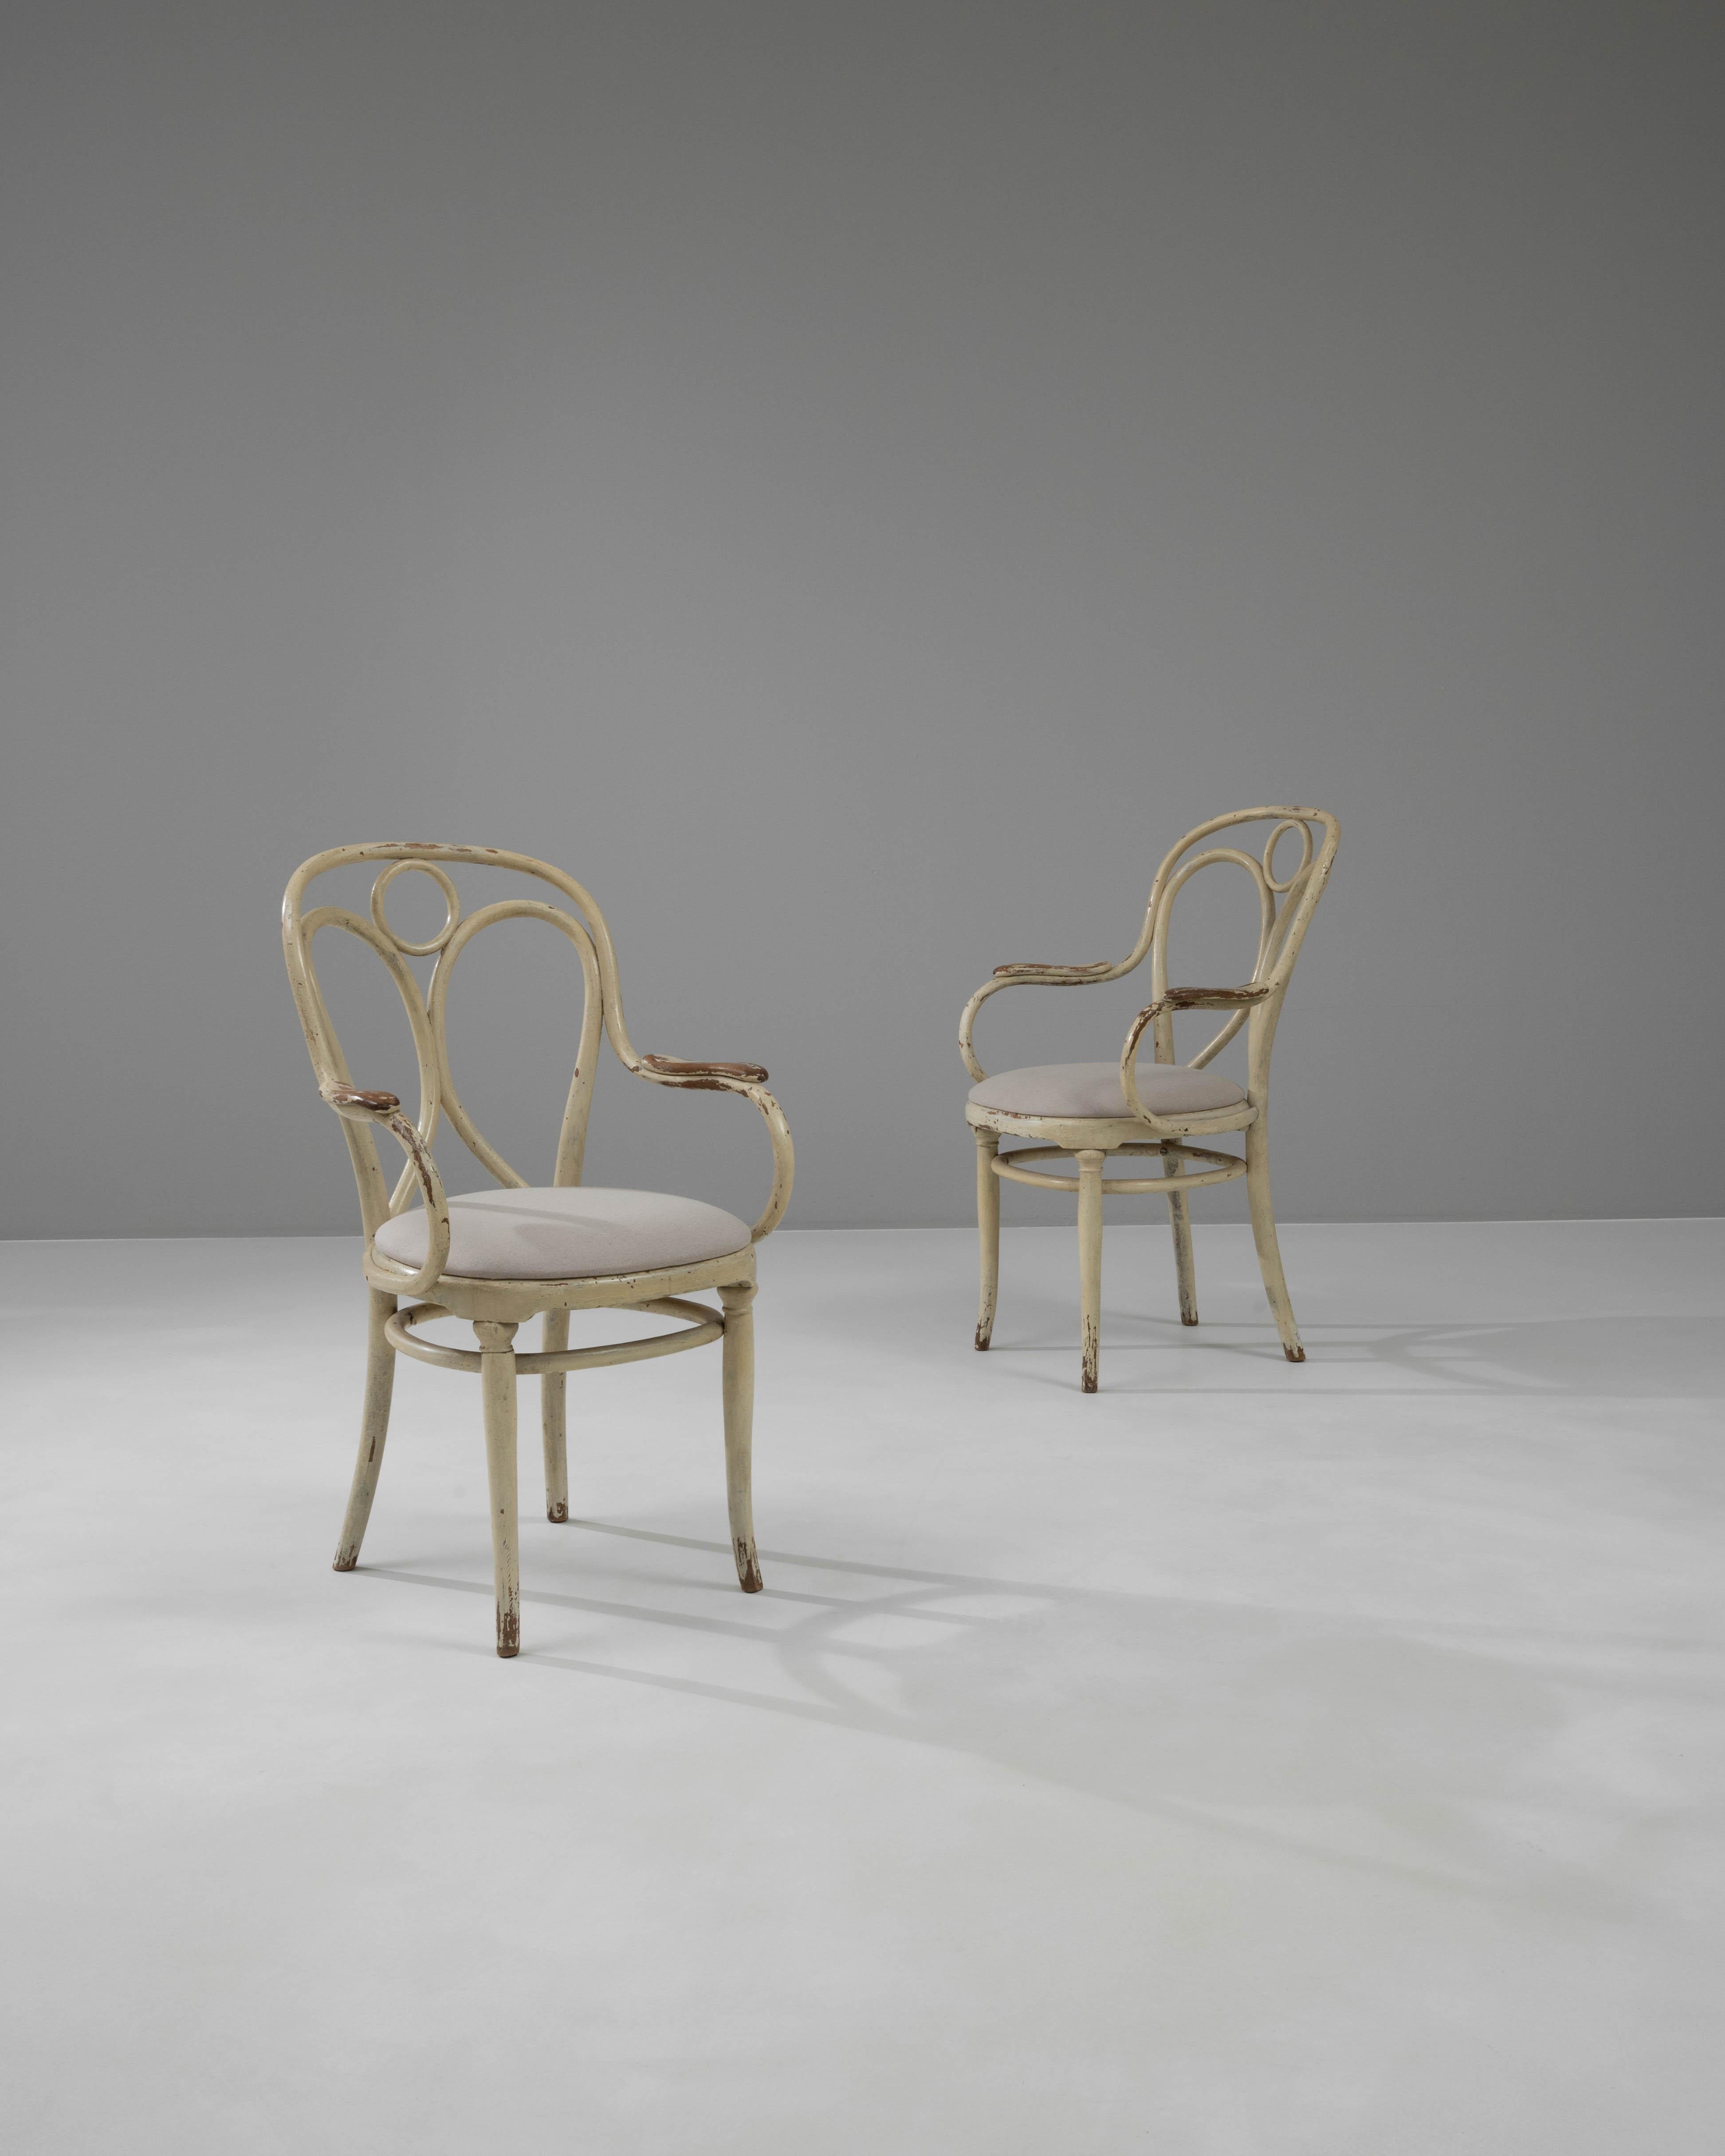 Bringen Sie ein Stück historischer Eleganz in Ihr Zuhause mit diesen österreichischen Holzstühlen aus der Zeit um 1900, ein atemberaubendes Paar, das klassische Schönheit mit kompliziertem Design verbindet. Diese Stühle sind ein Zeugnis der